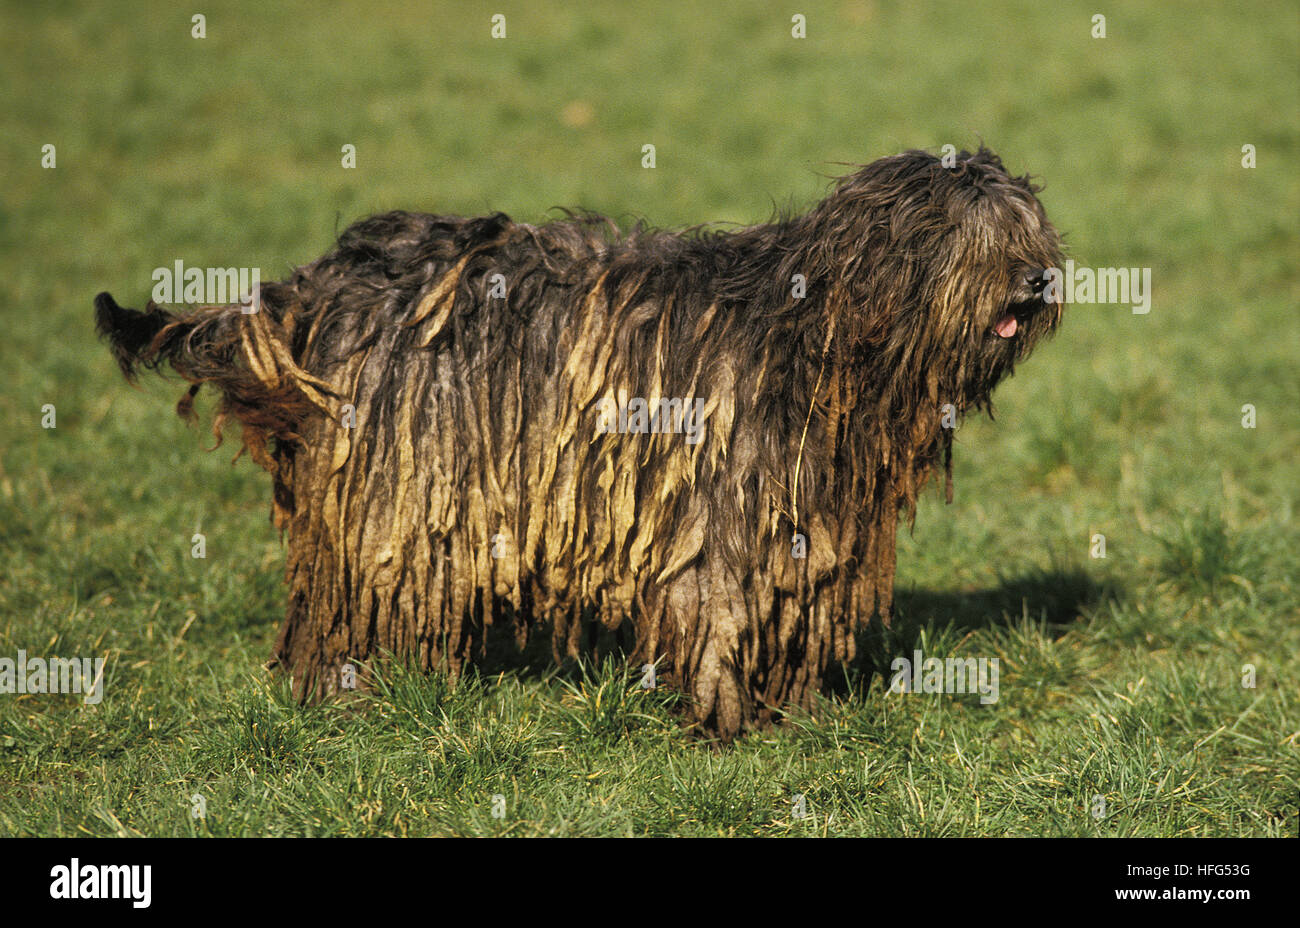 Bergamasco Sheepdog or Bergamese Shepherd, Adult standing on Grass Stock Photo